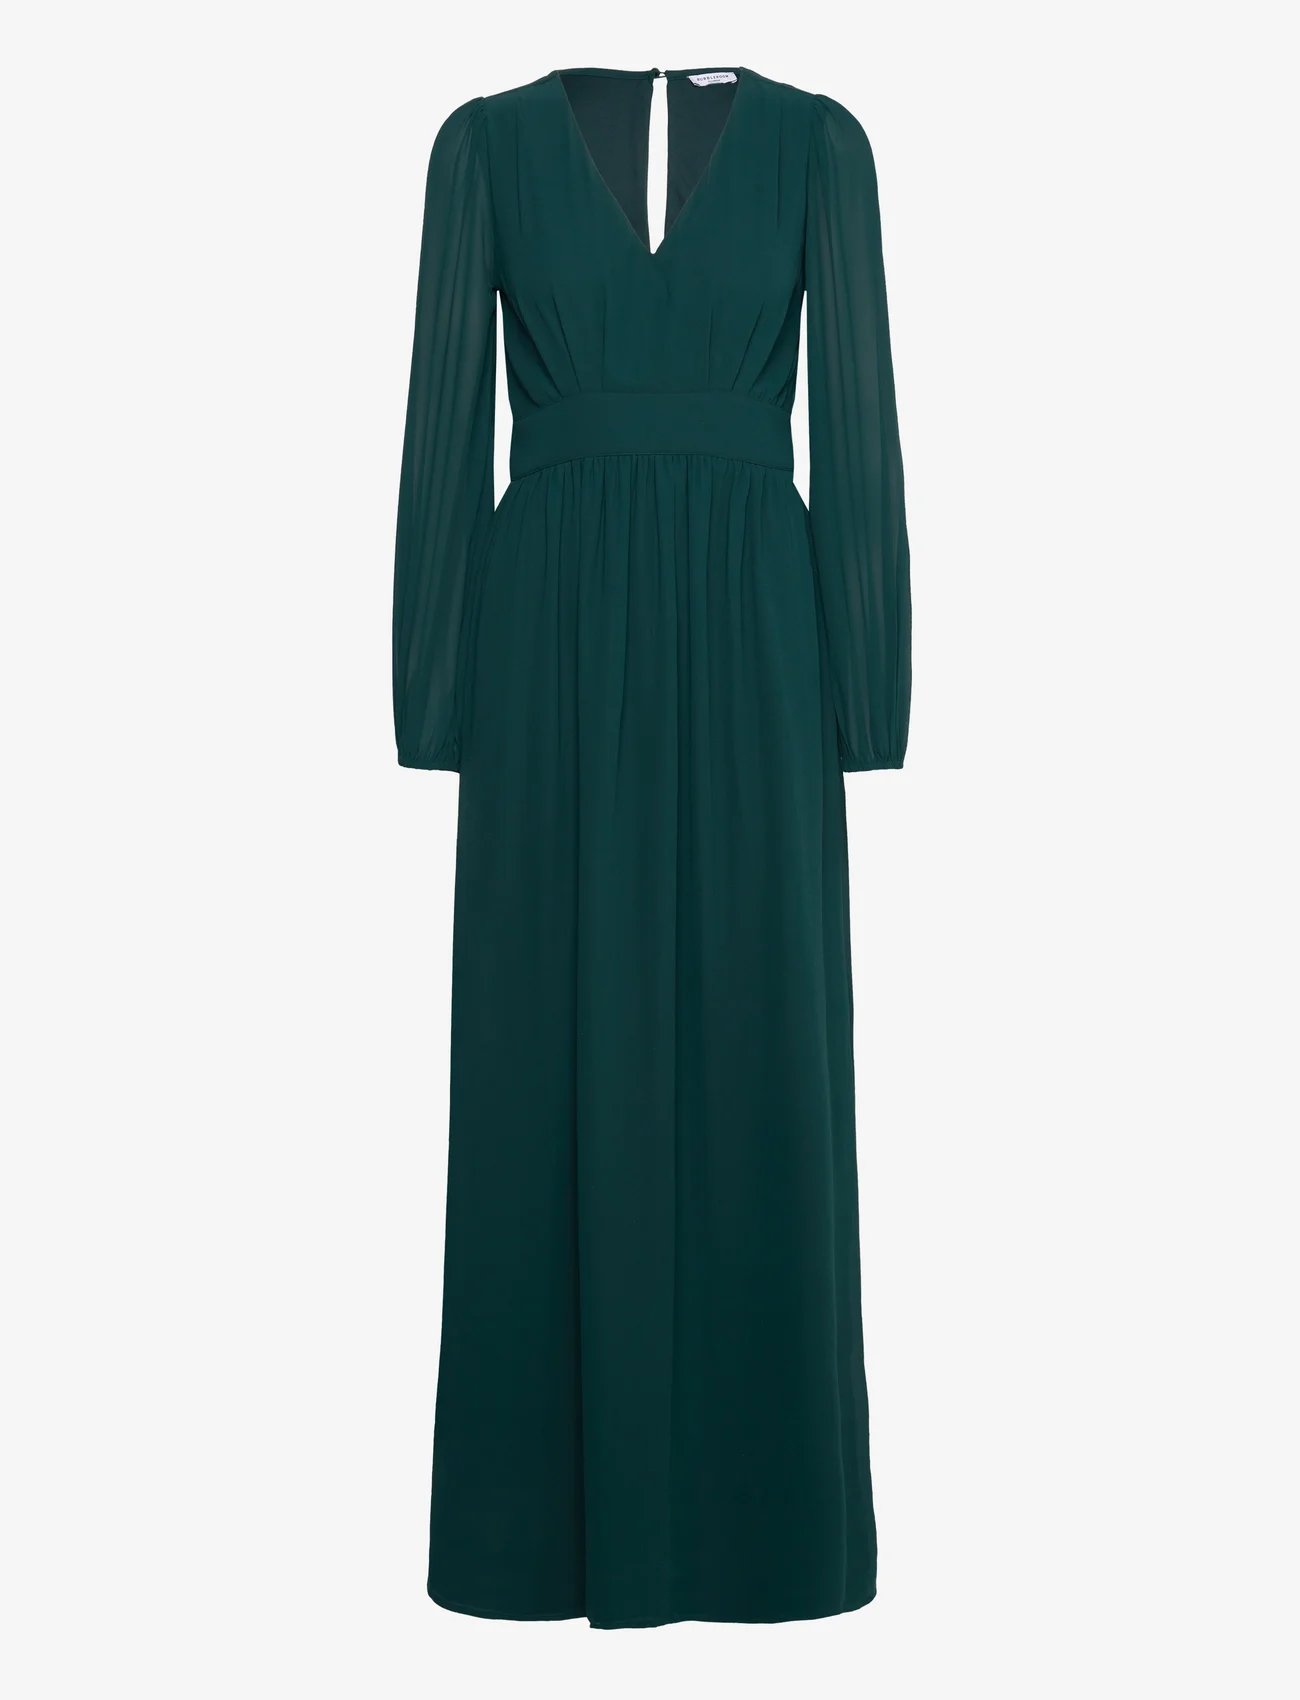 Bubbleroom - Isobel Long sleeve Gown - selskapskjoler - dark green - 1